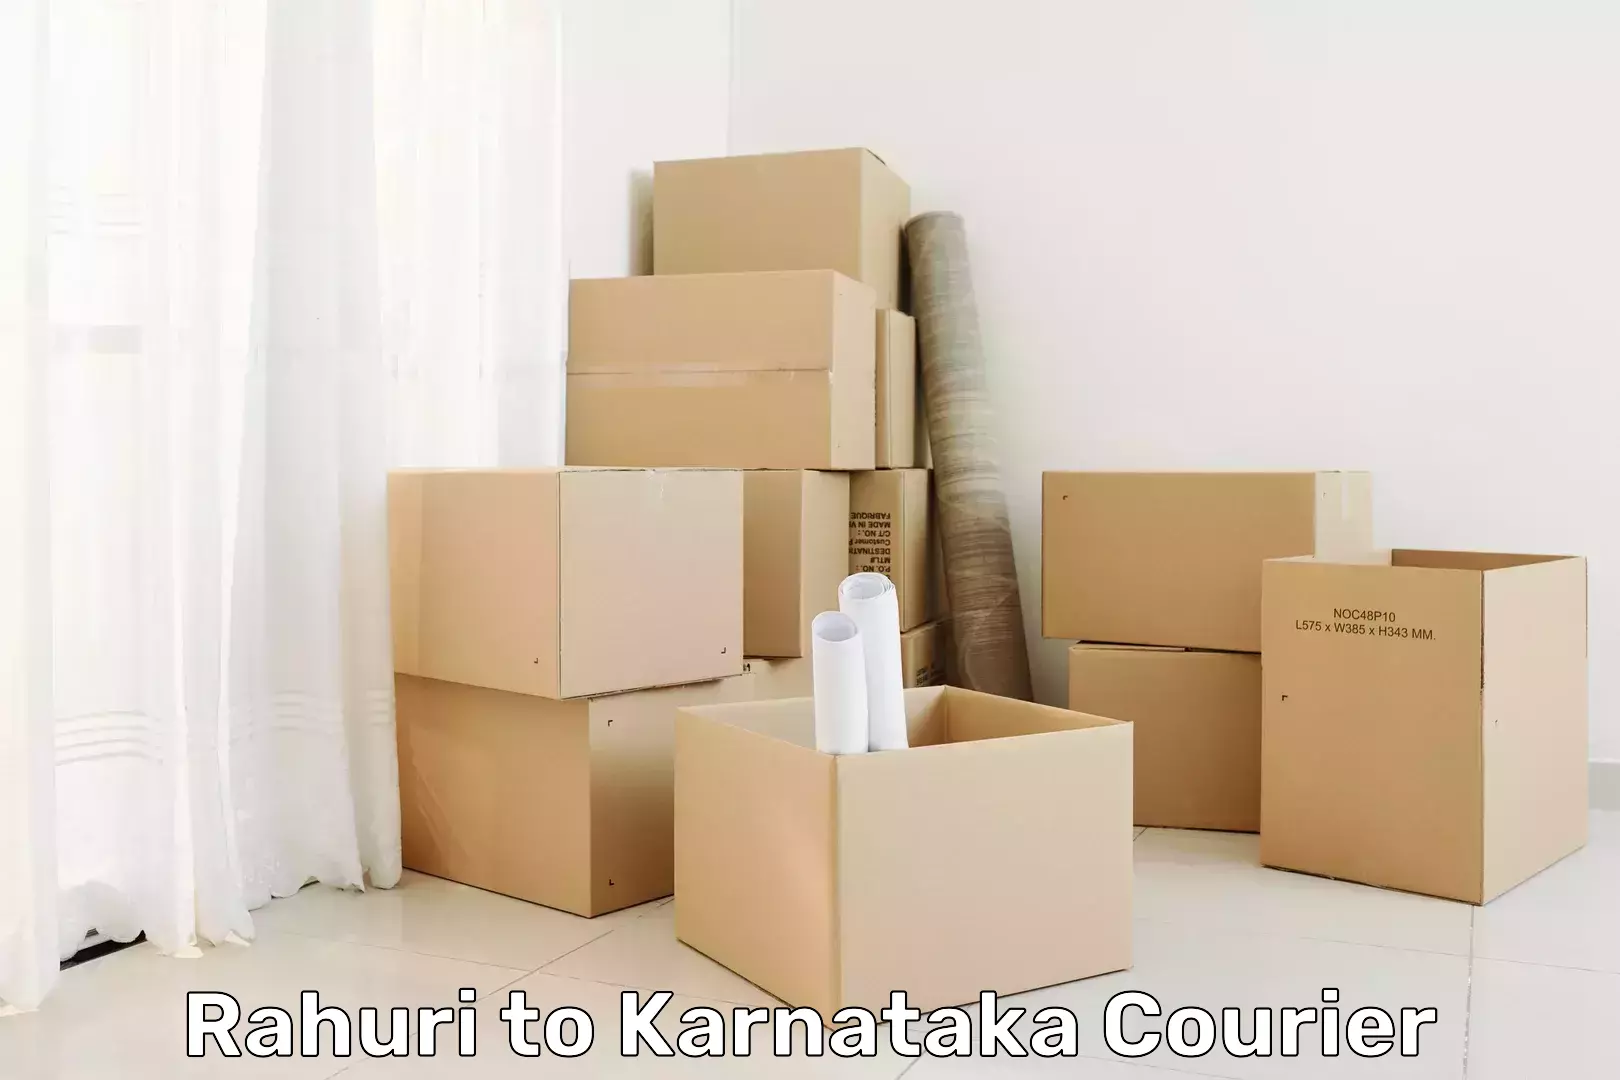 Personalized courier experiences Rahuri to Kalaburagi